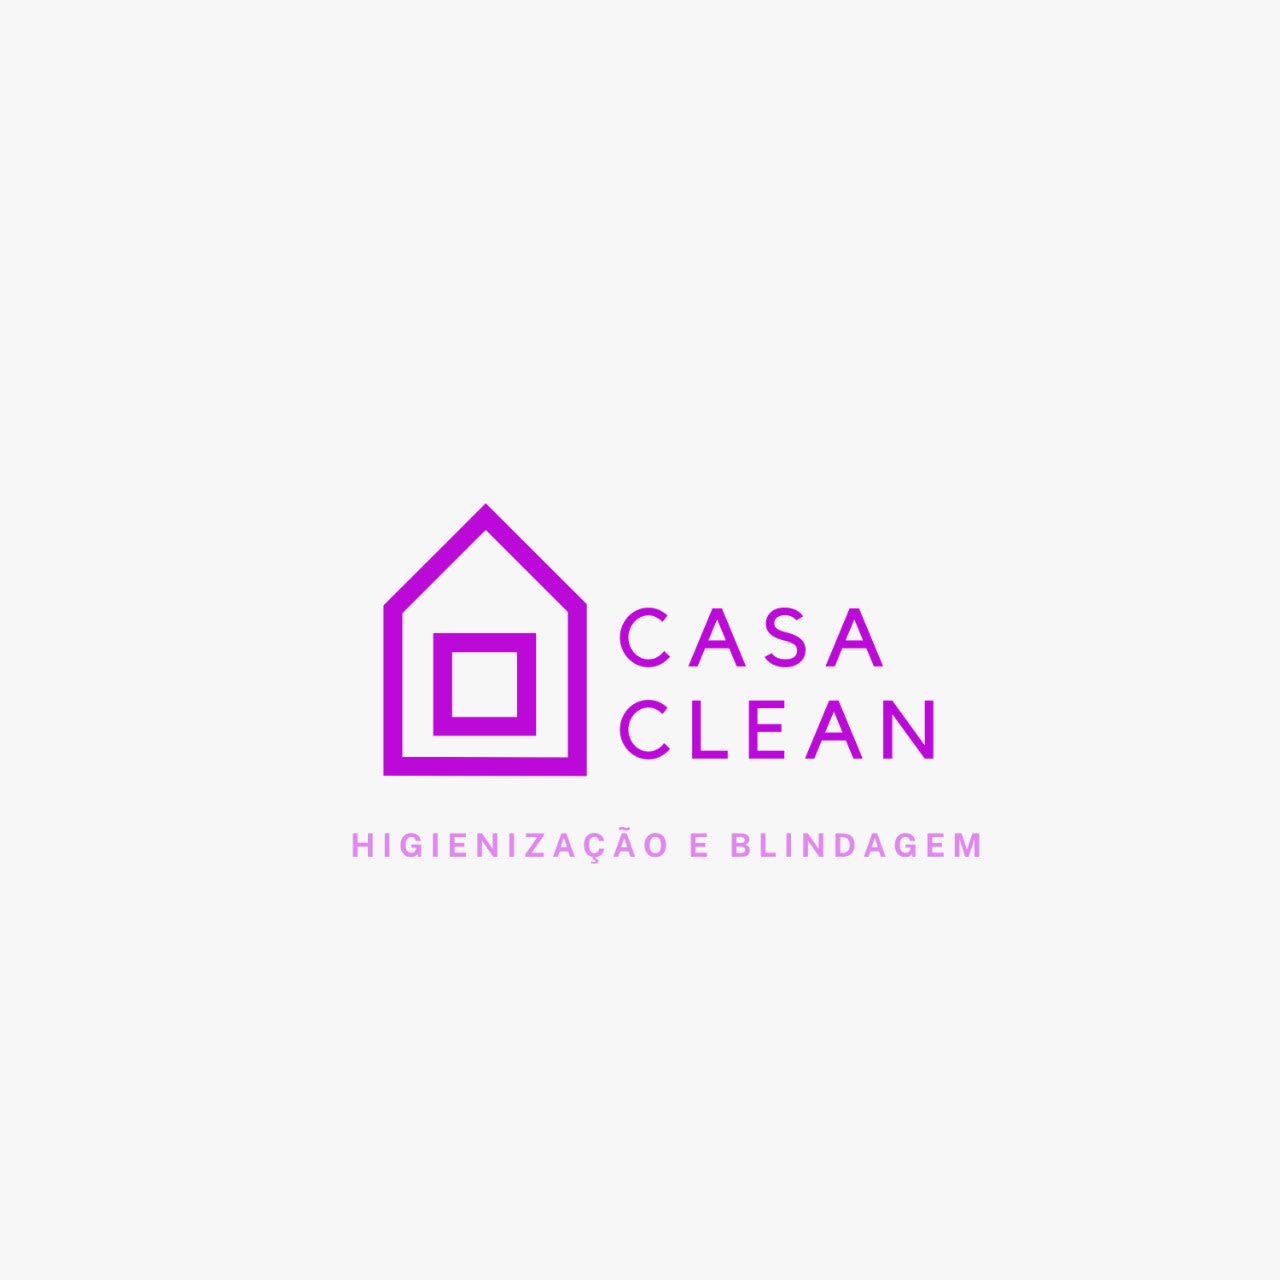 Casa Clean higienização